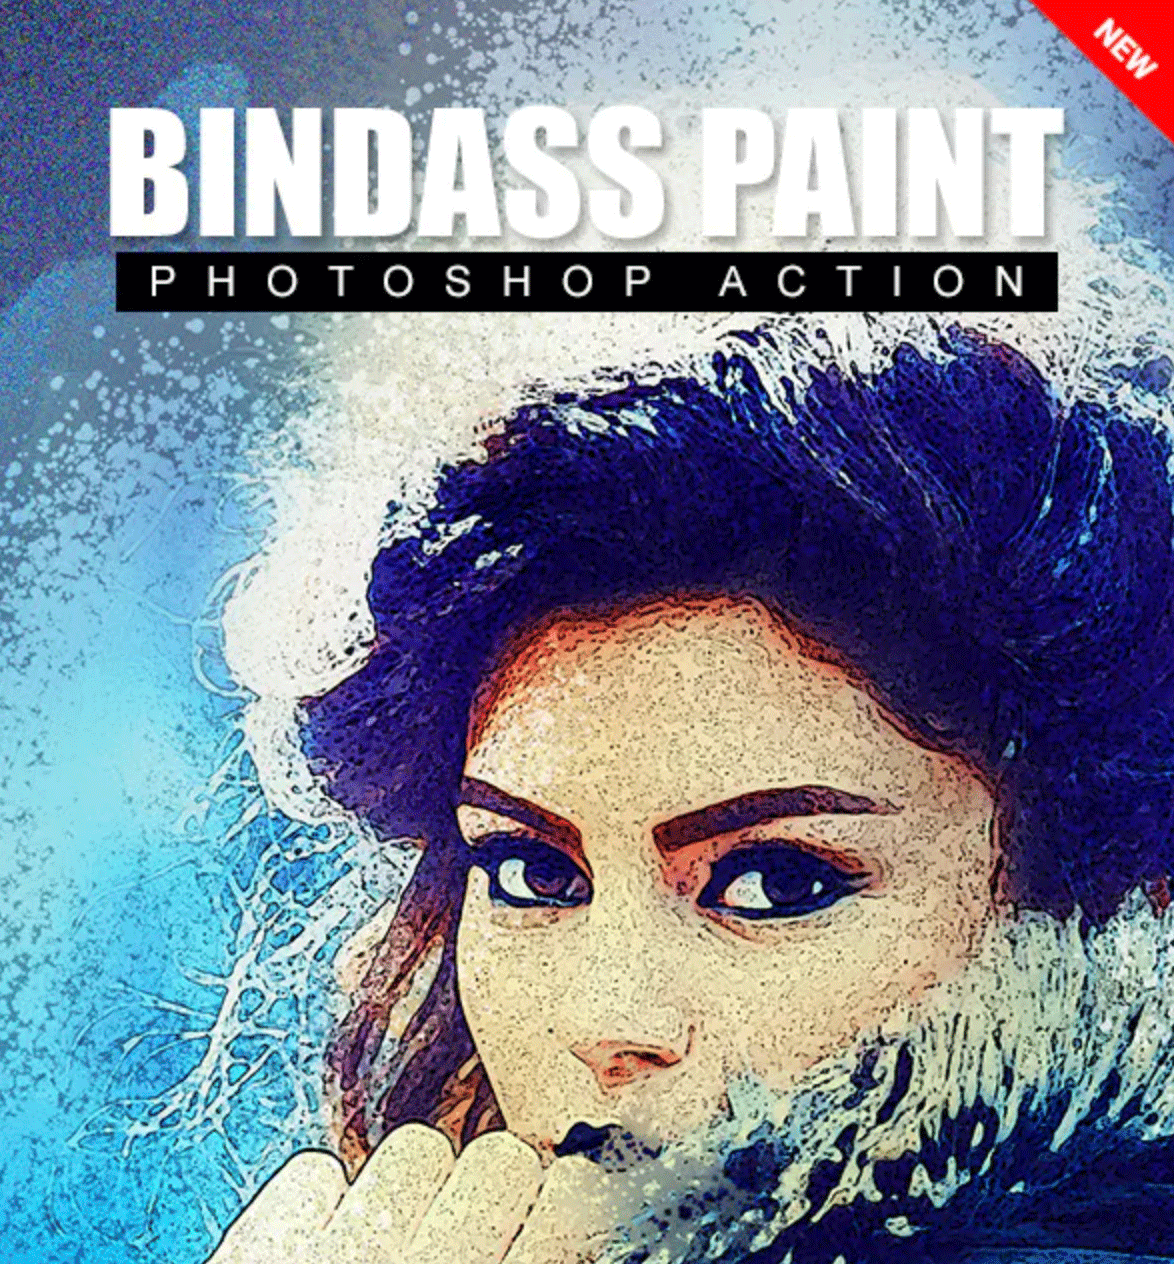 高品质的摄影照片油漆处理效果PS动作 Bindass Paint Photoshop Action插图